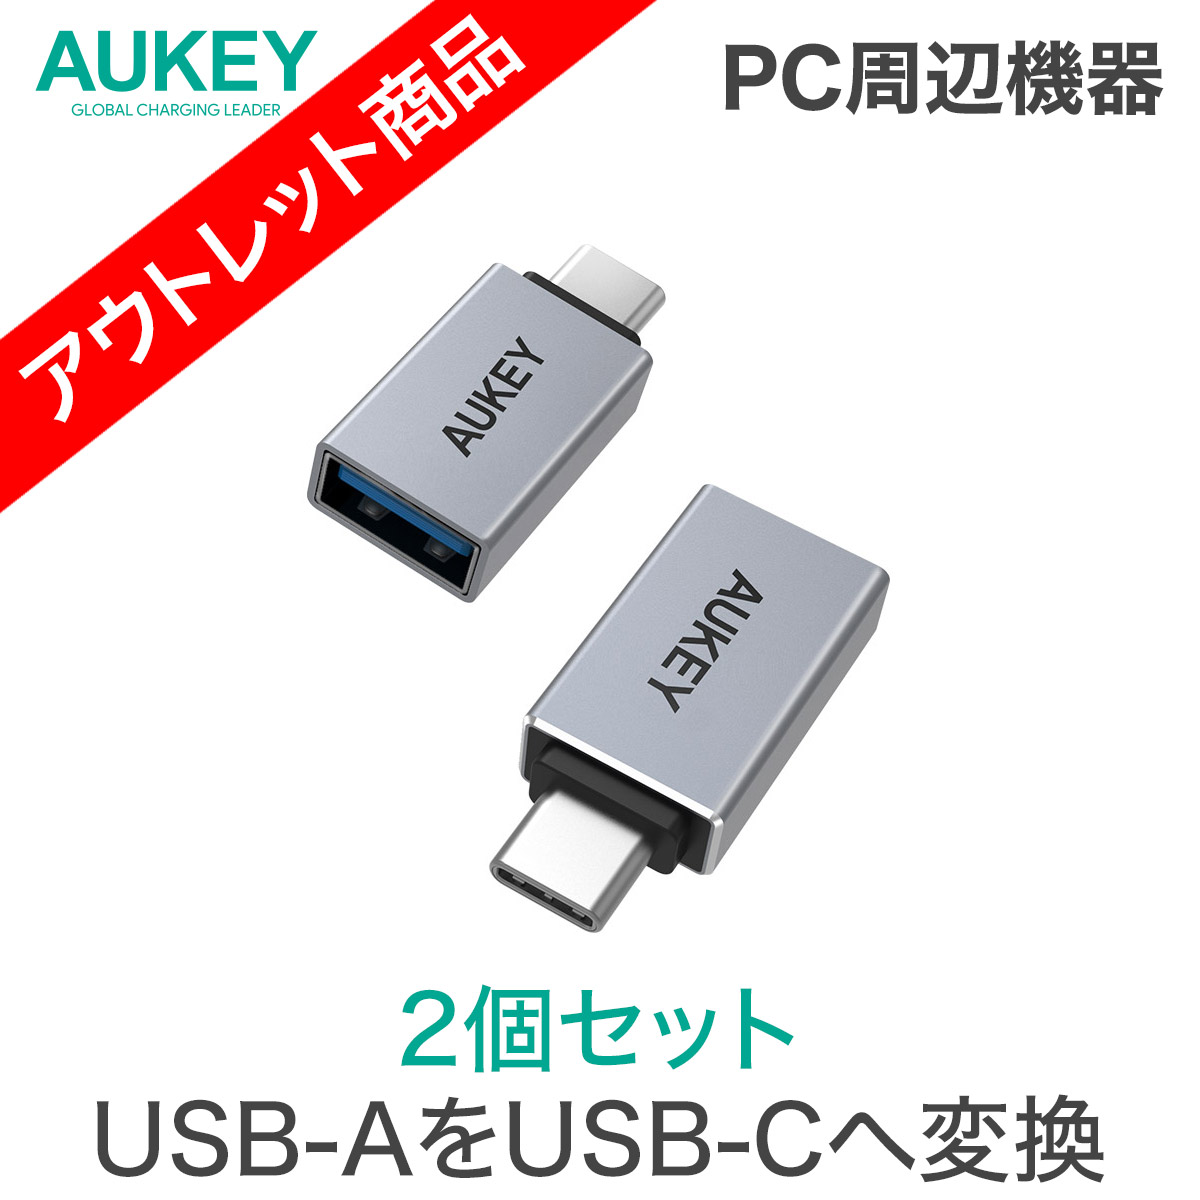 変換アダプター 黒色 2個 タイプC から USB 2.0 充電 転送 パソコン